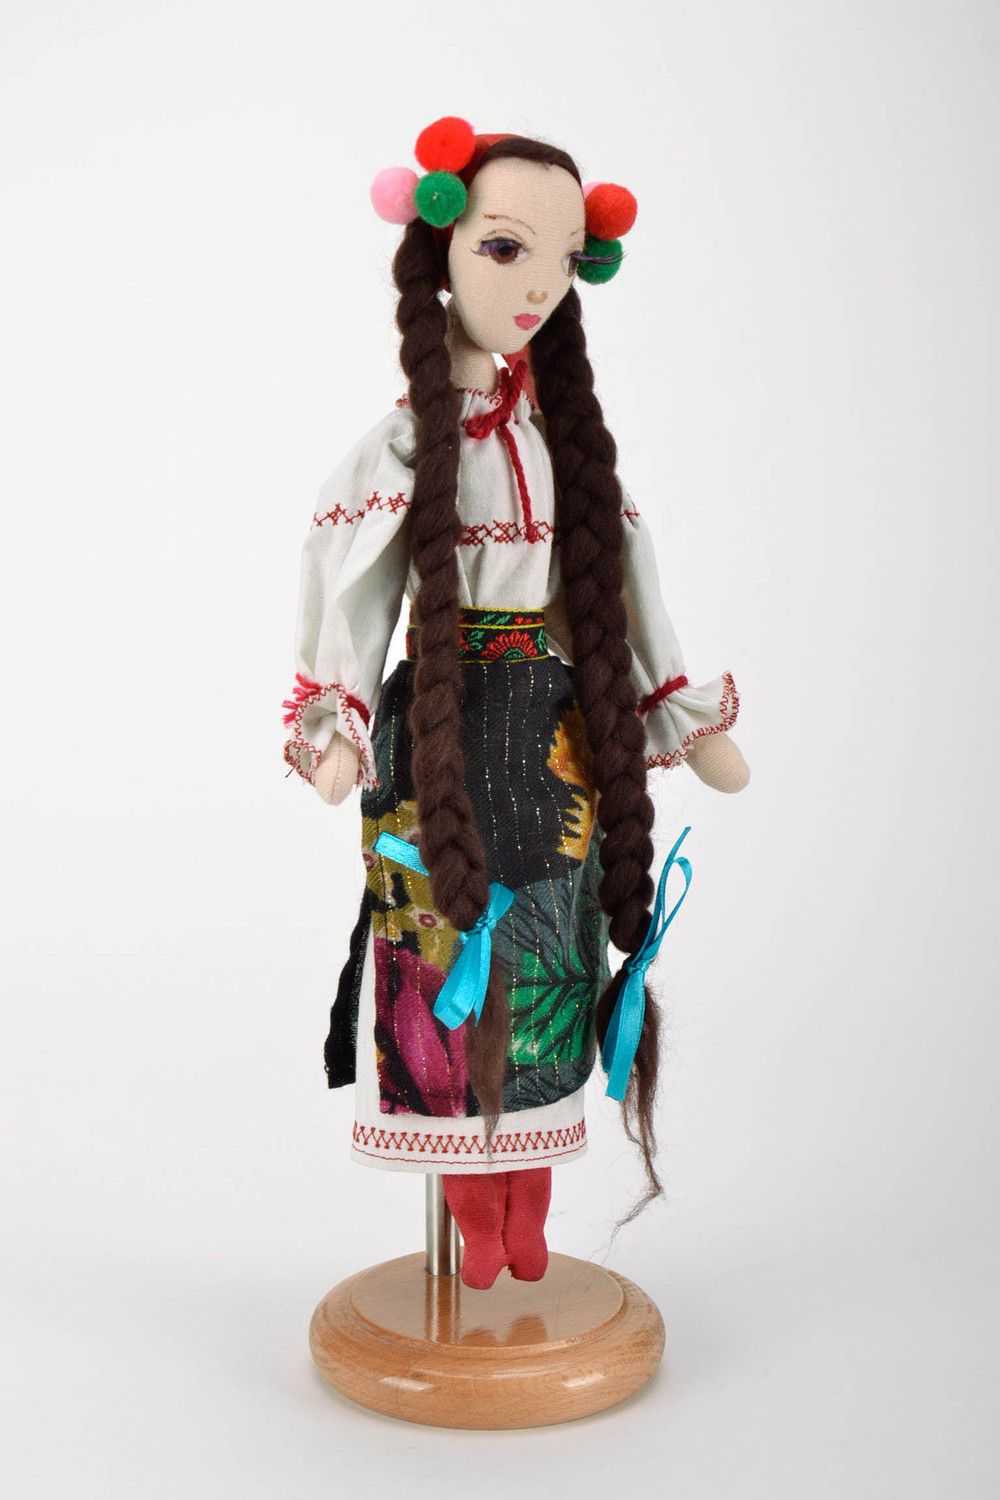 Textil Puppe auf der Stütze Ukrainerin foto 3